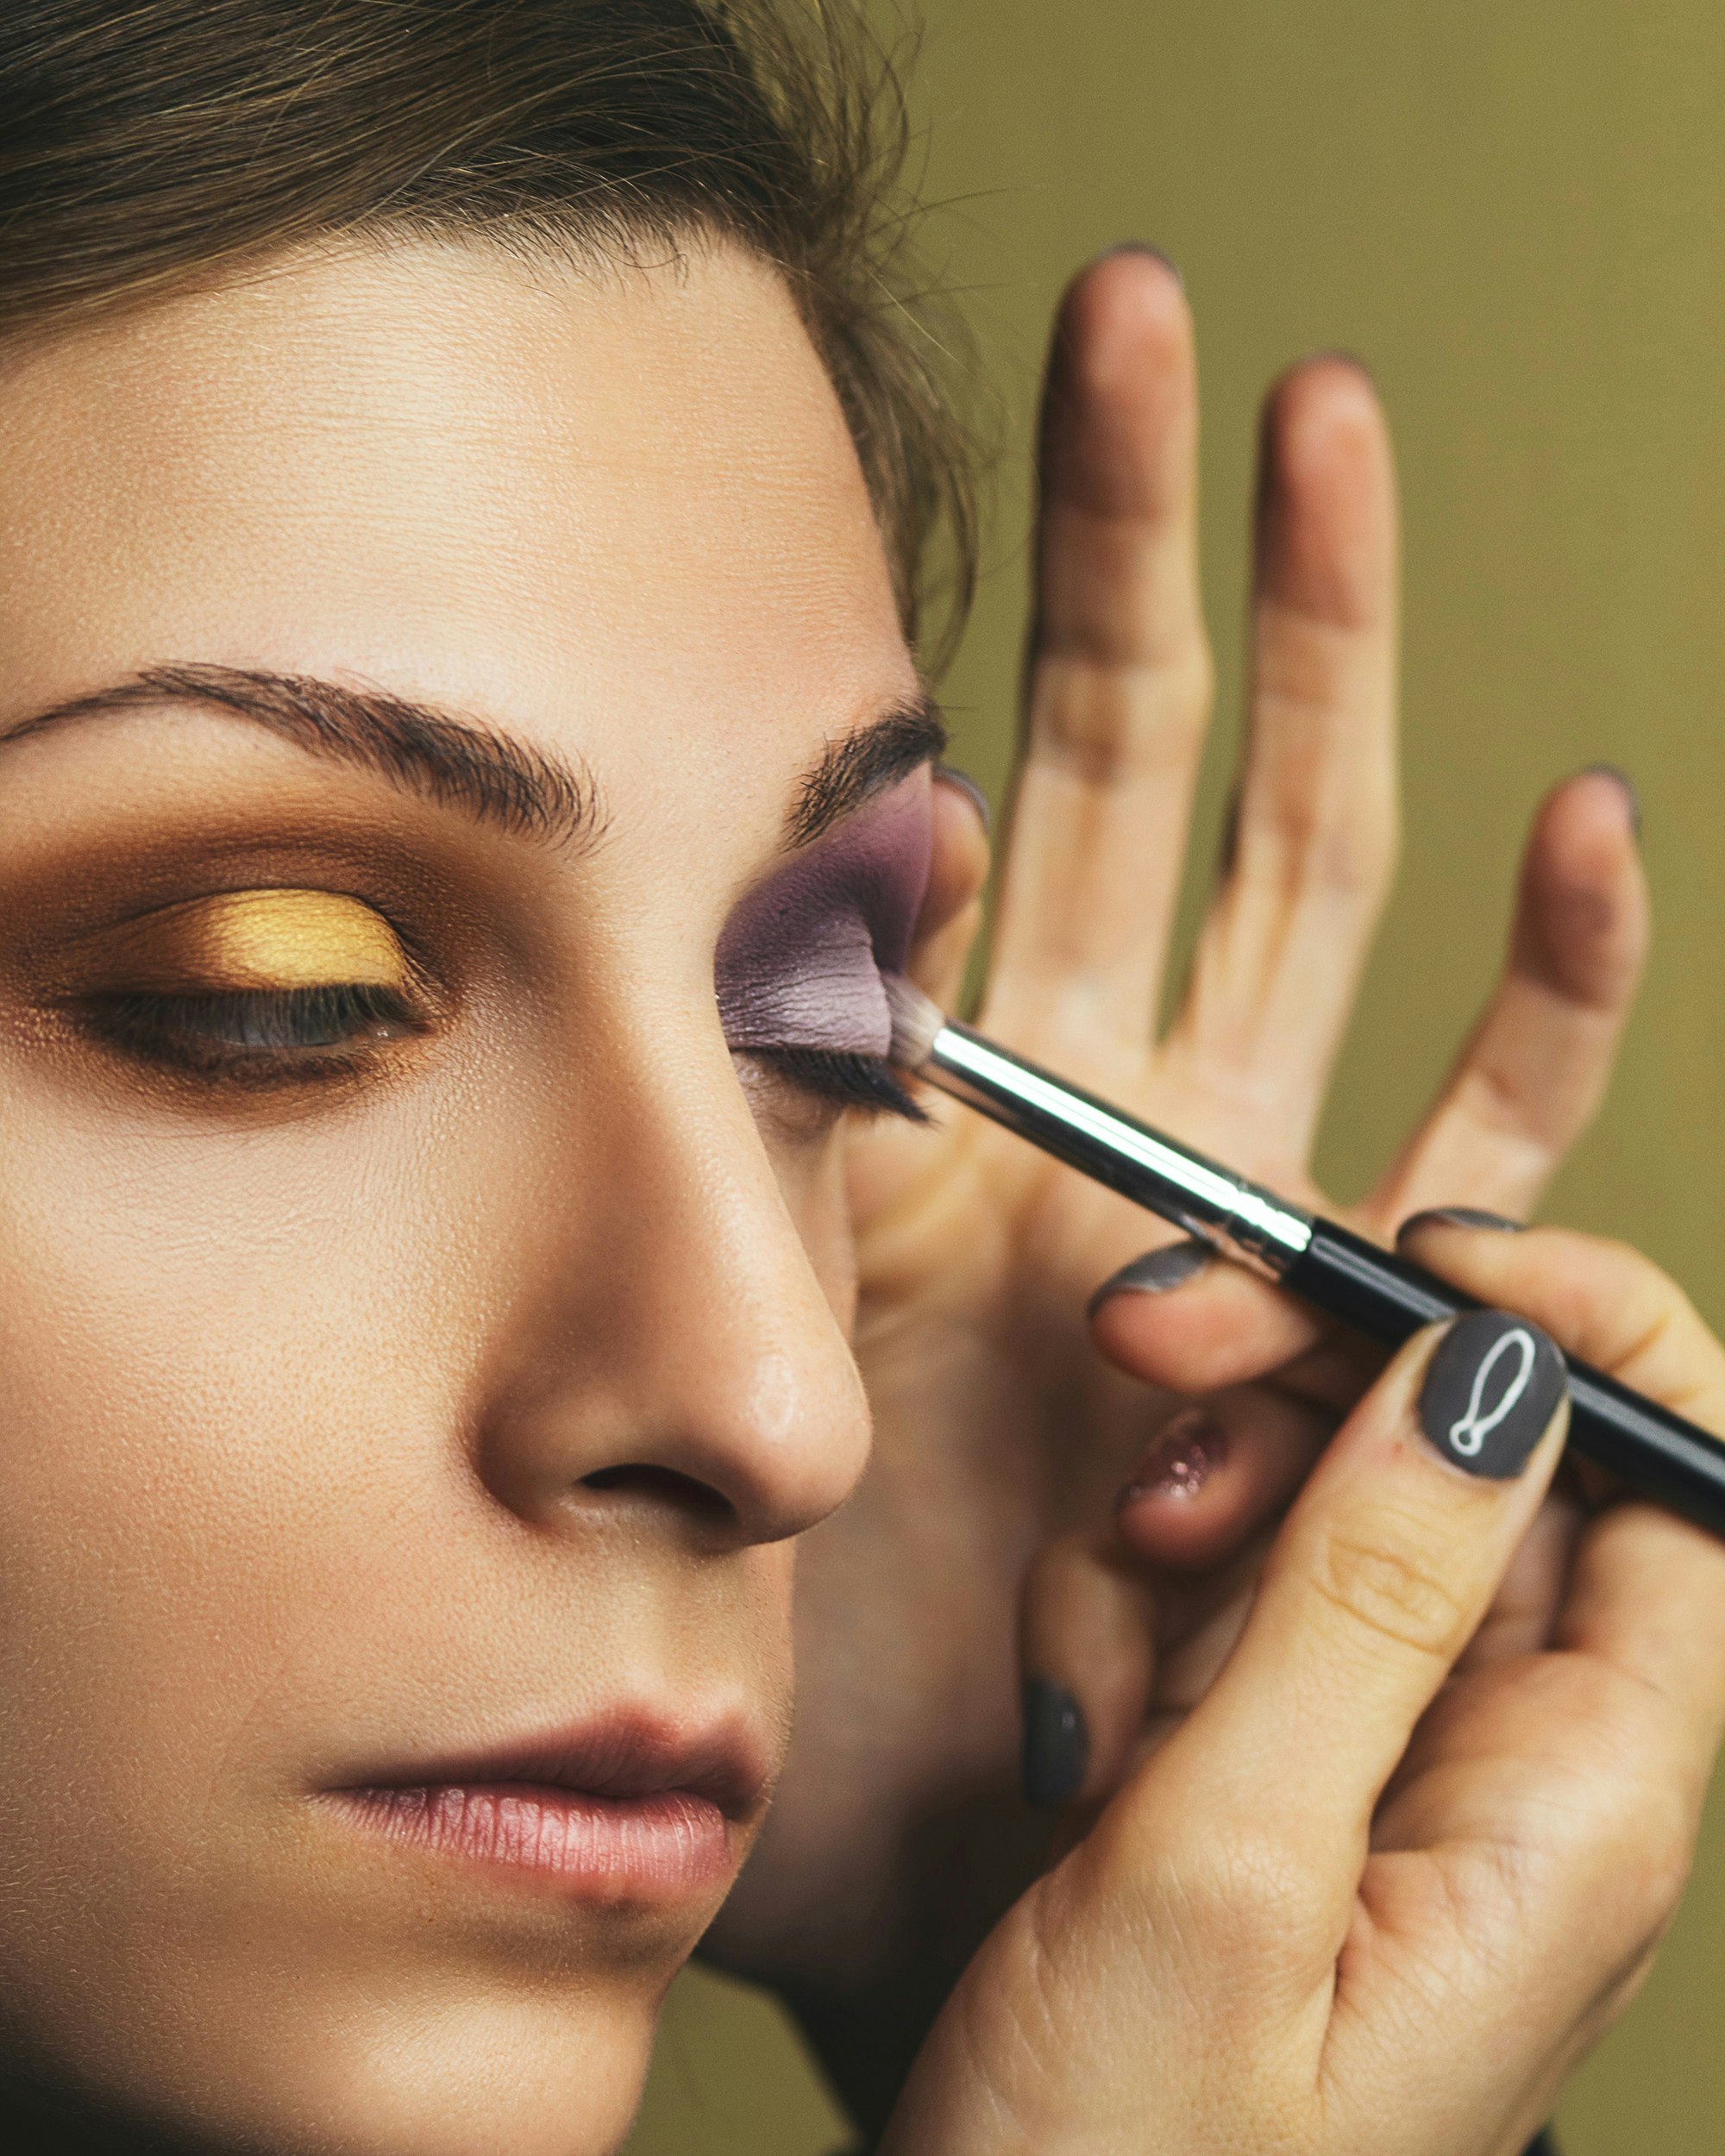 Årets bedste makeupbørster – her er favoritterne, som er bedst i test